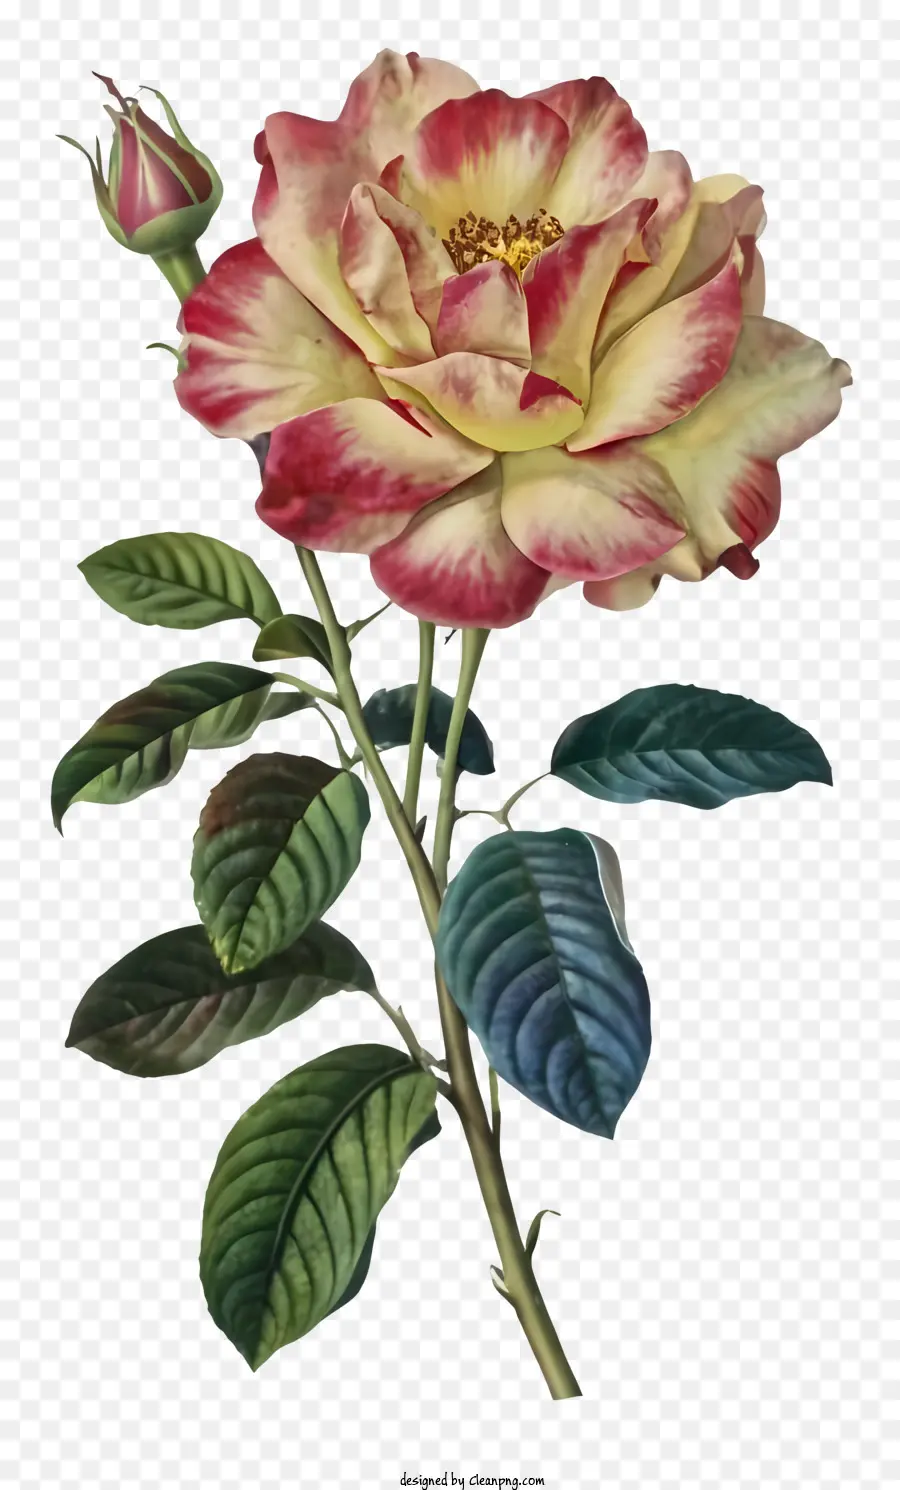 schwarzer Rand - Farbenfrohe Rose auf dunklem Hintergrund mit schwarzem Rand